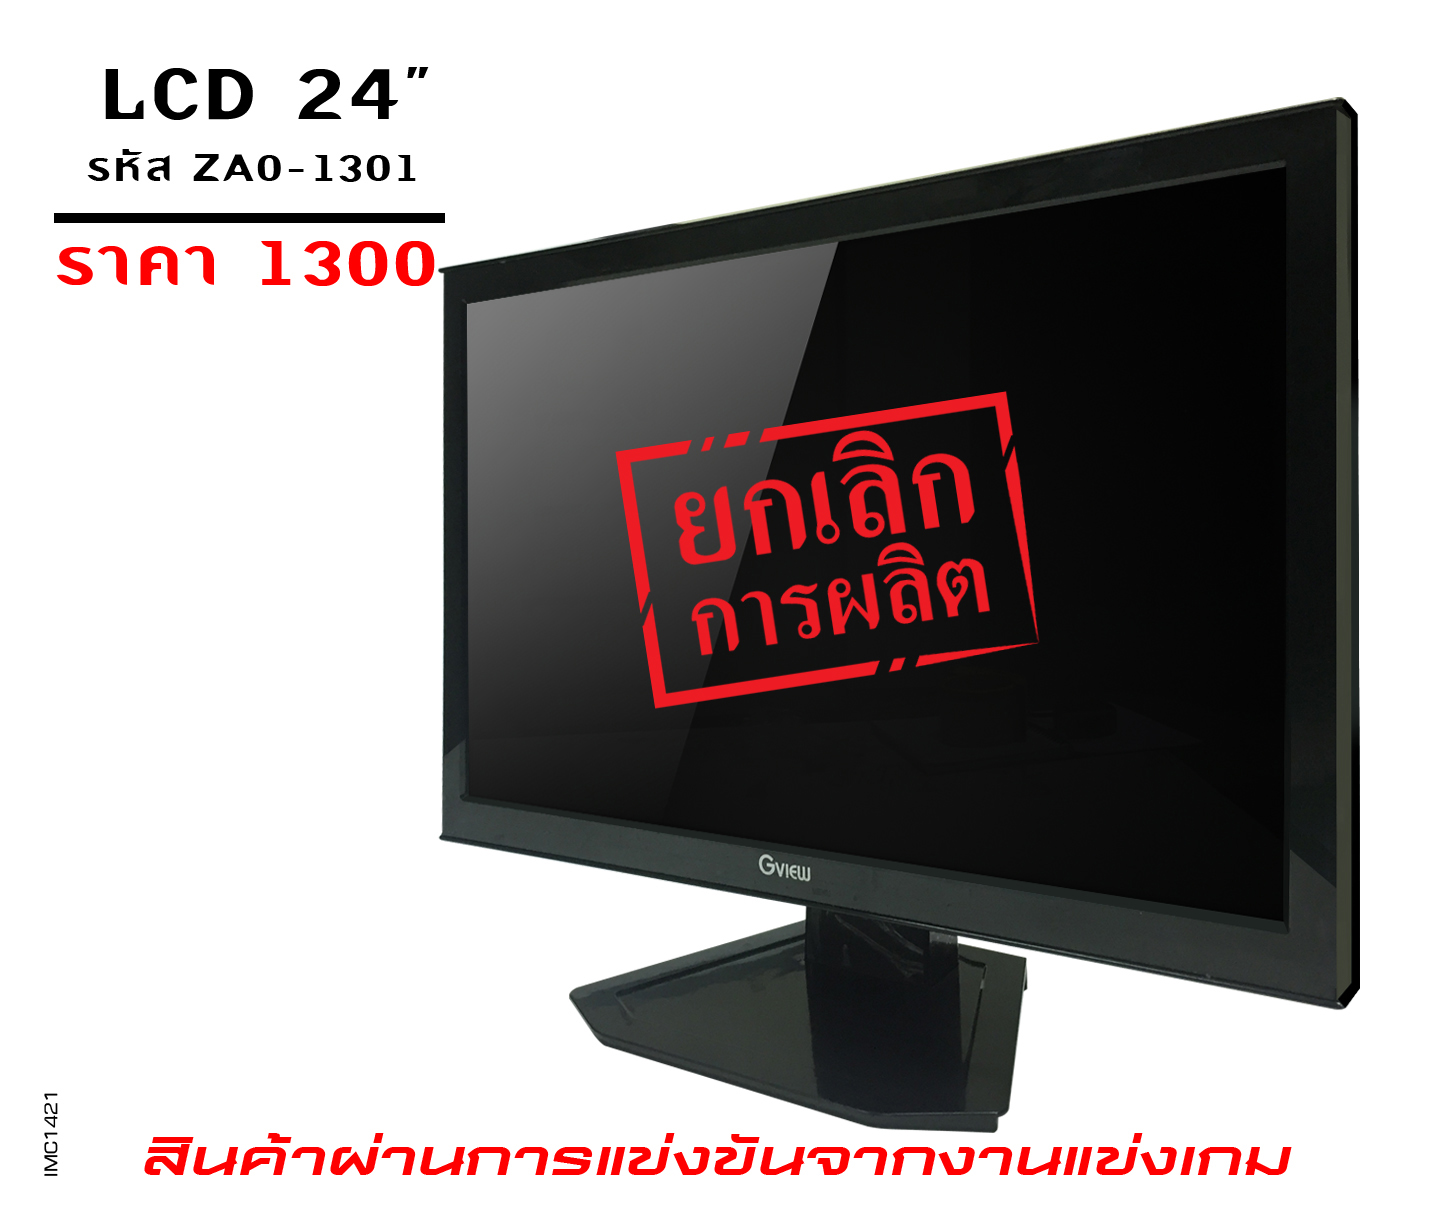 รุ่น GVIEW LCD 24